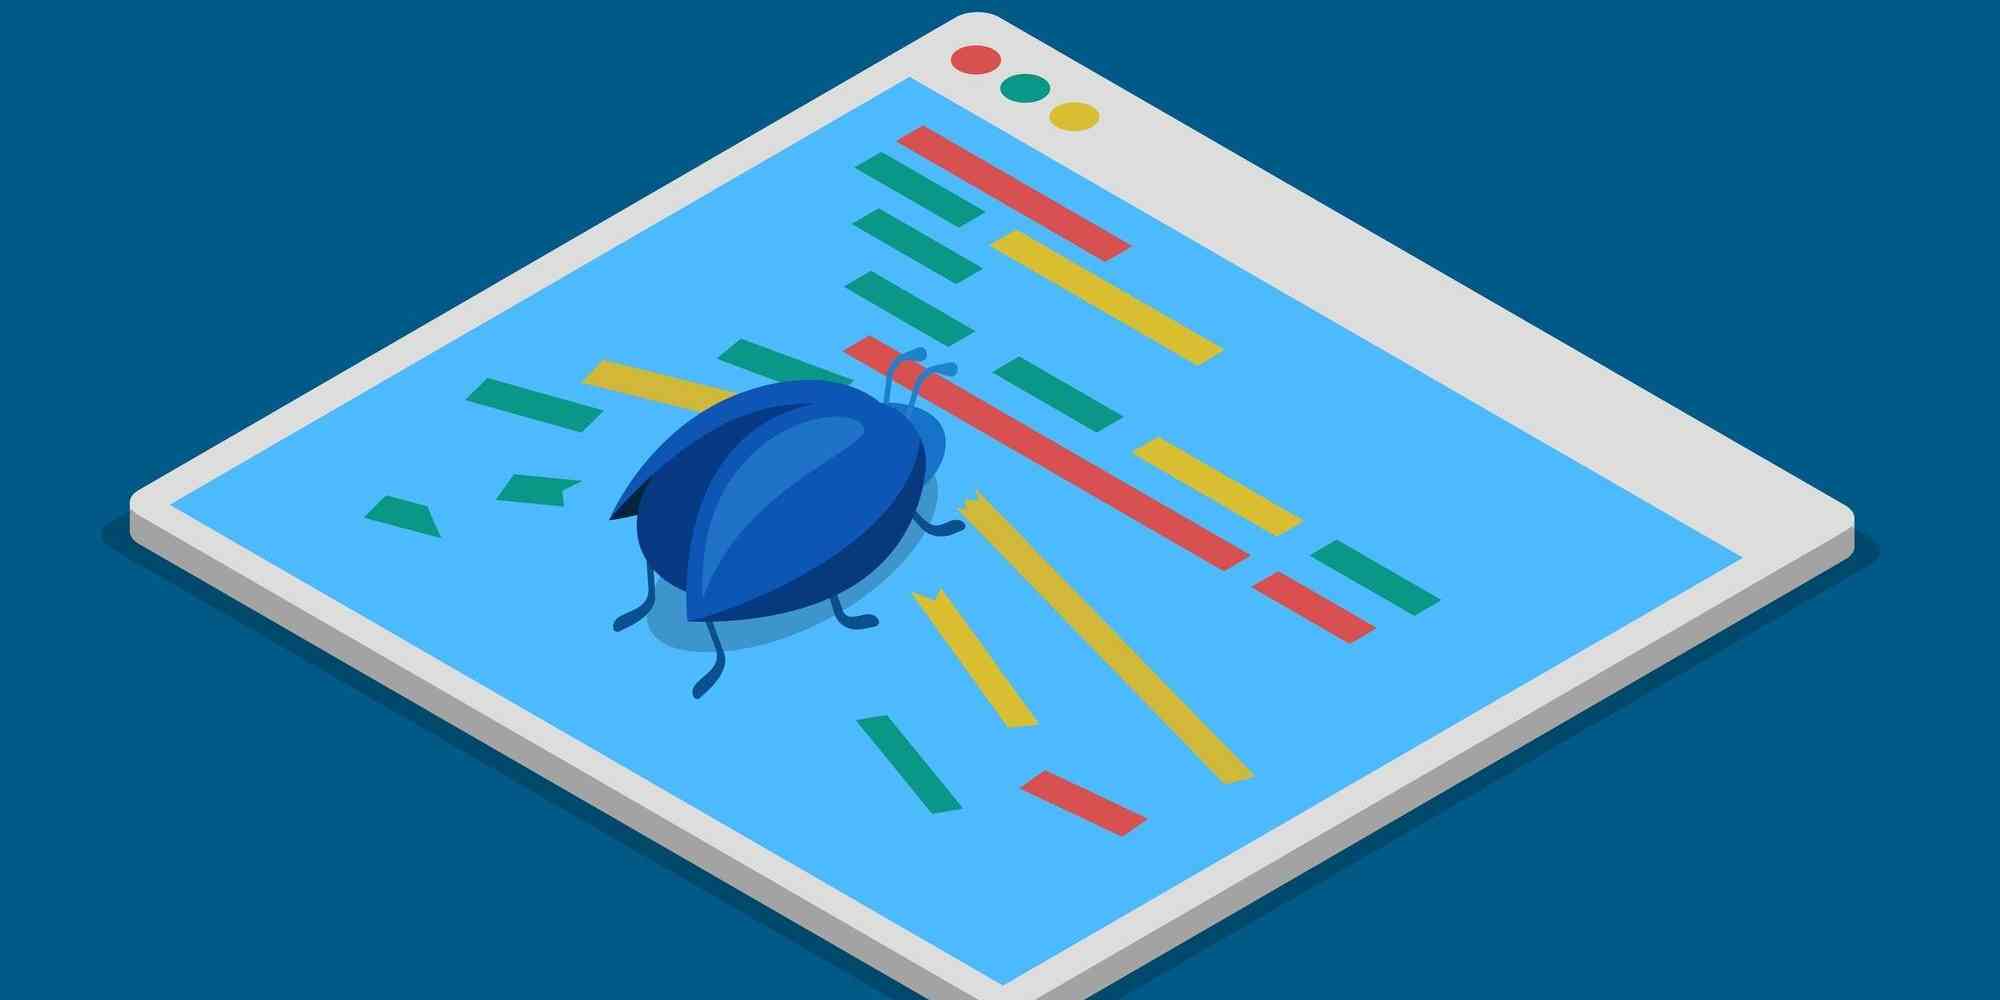 图中是一个卡通画风格的软件界面，上面有一个蓝色的昆虫，下面有彩色线条。